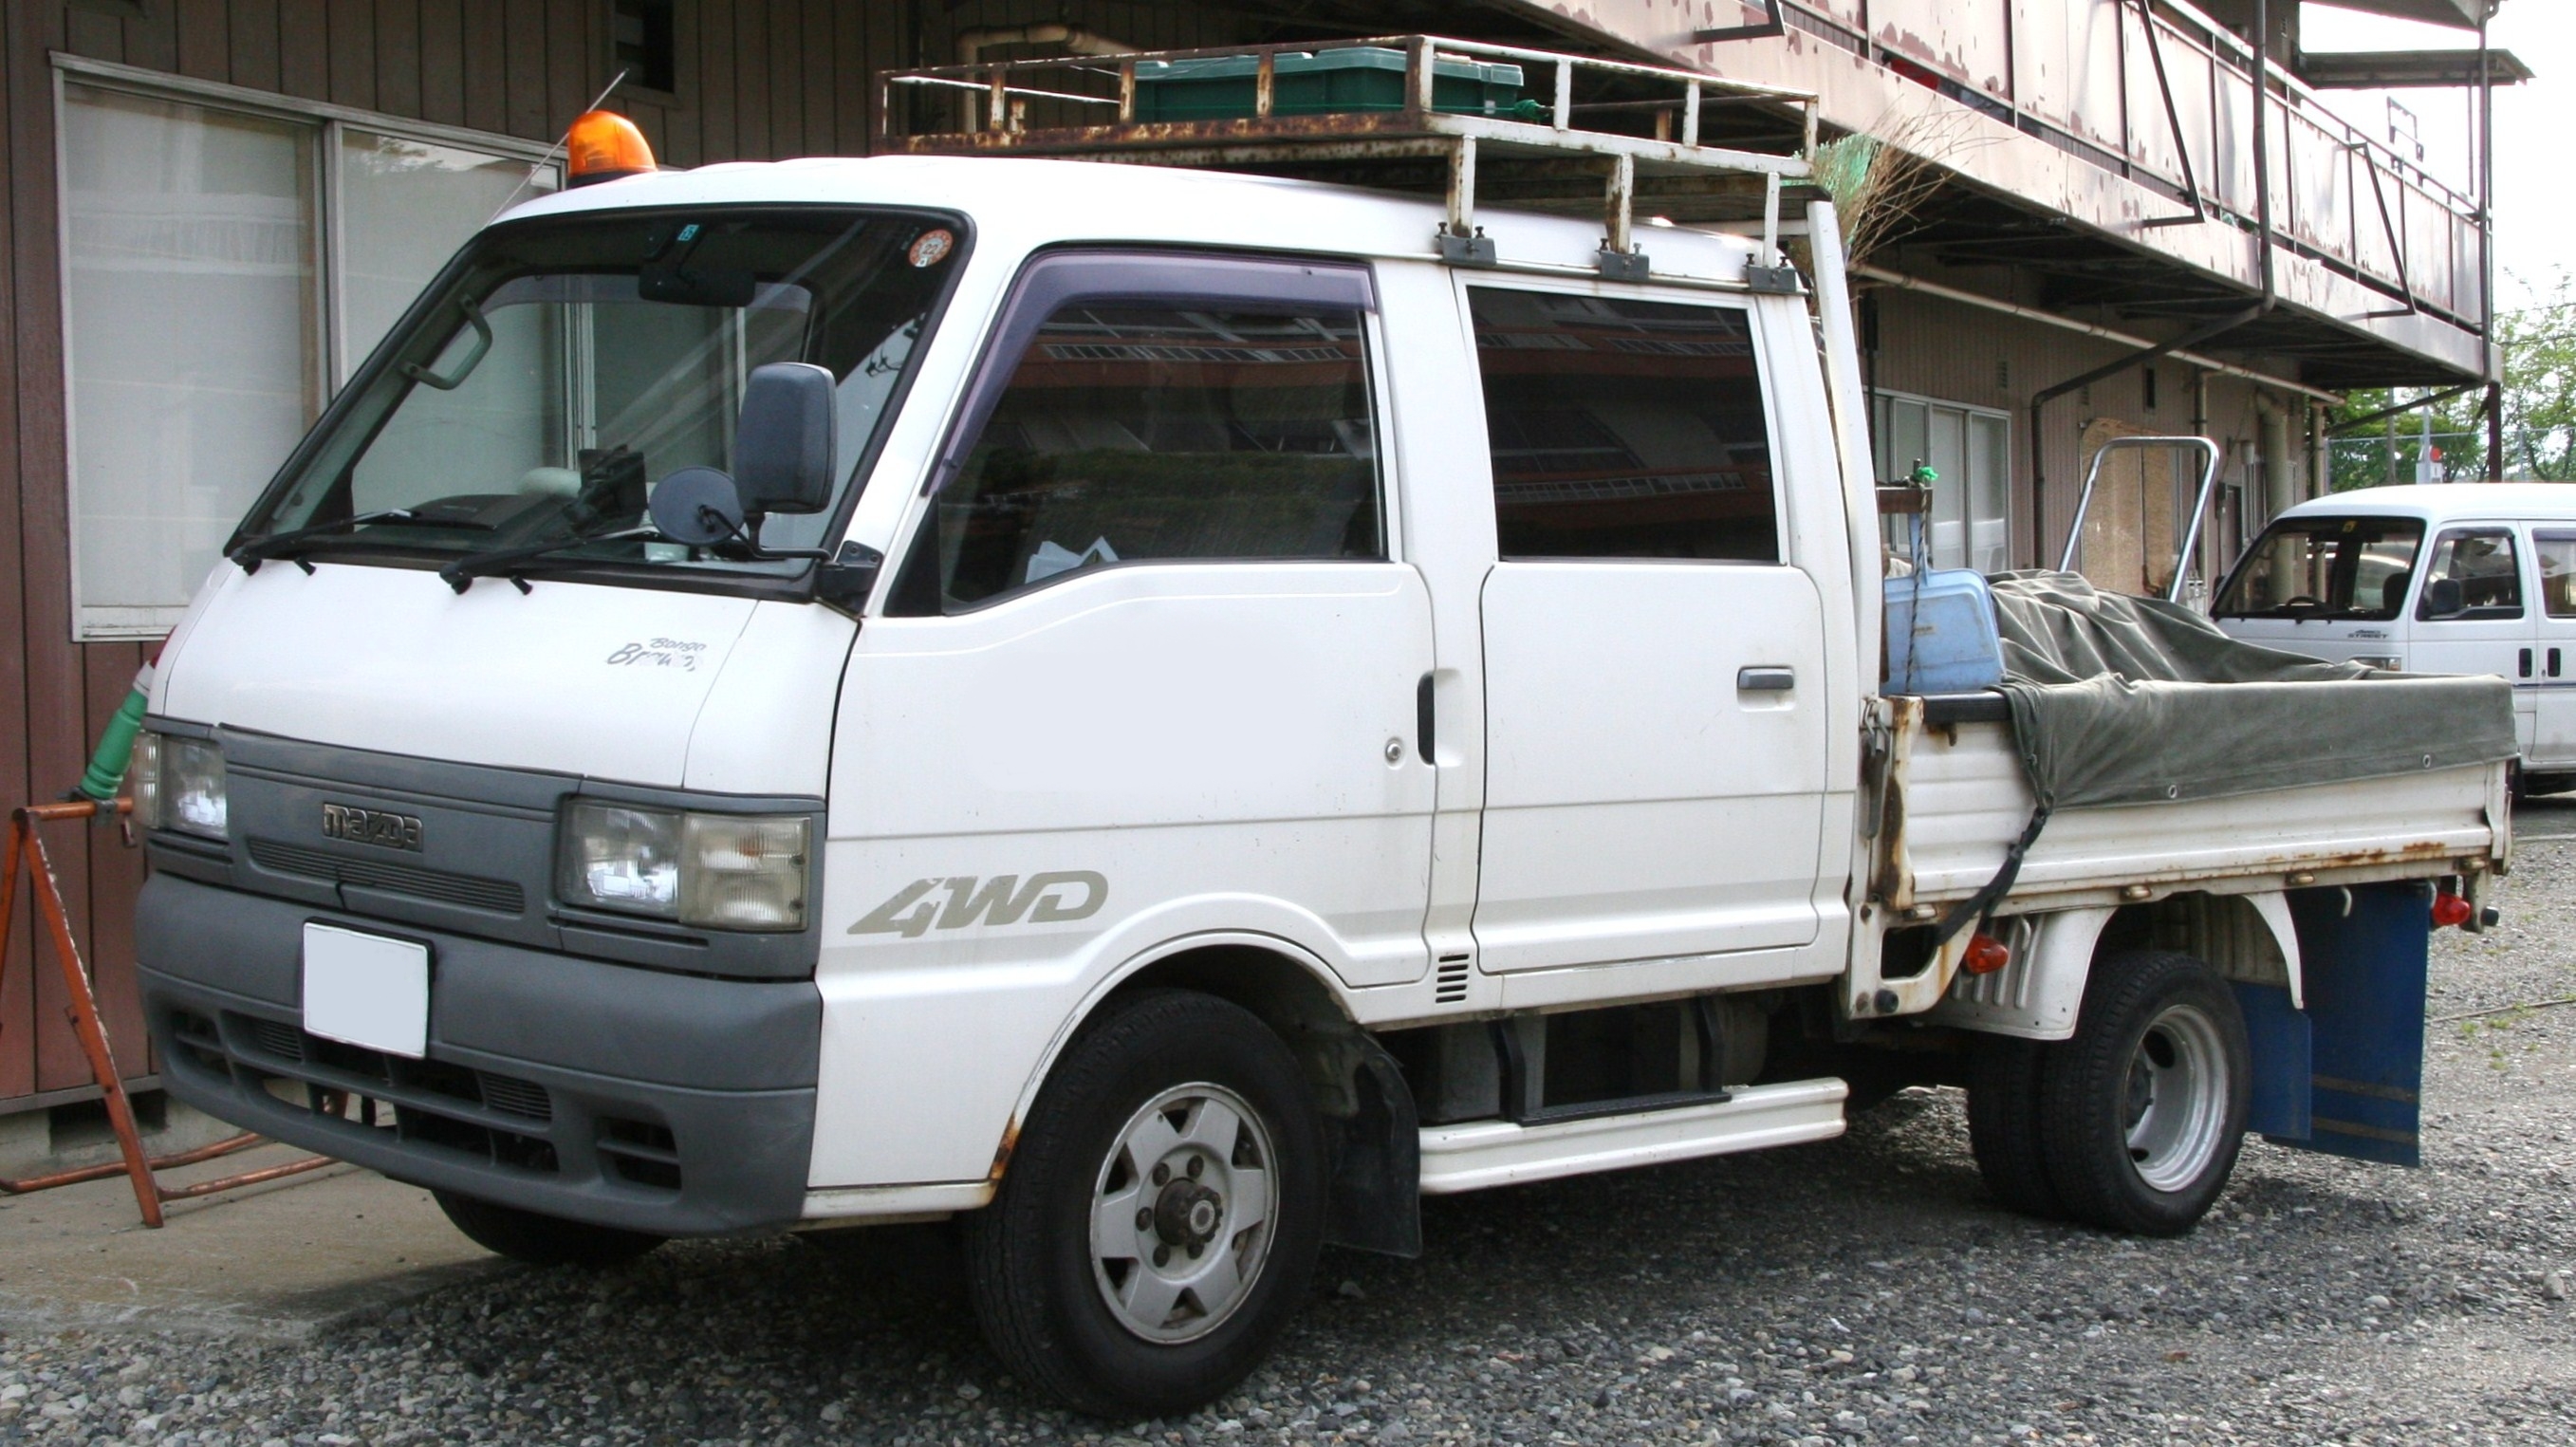 File:Mazda Bongo Brawny Truck Double Cab.jpg